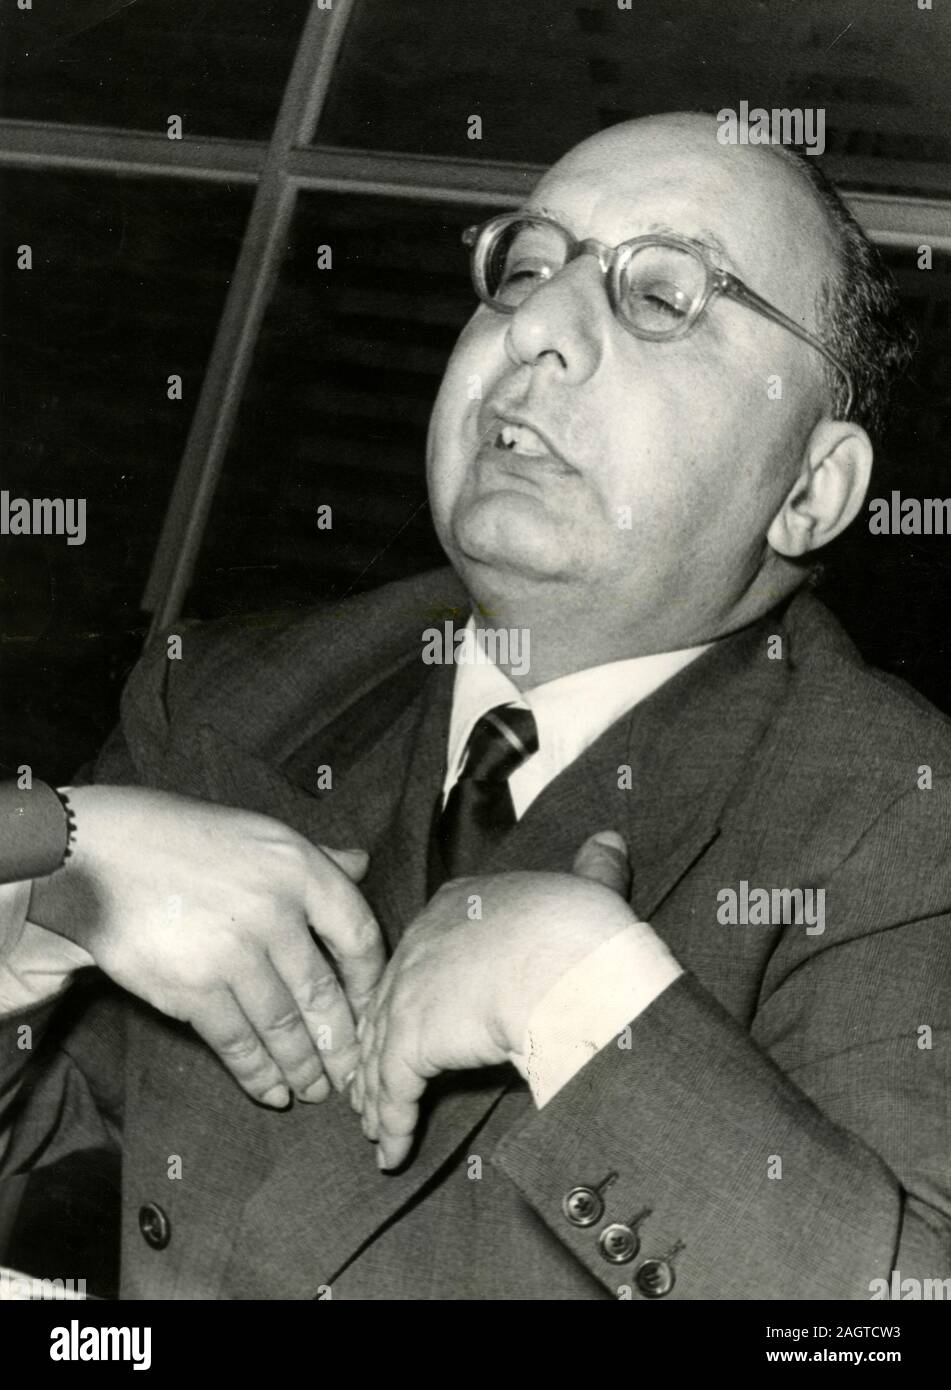 Político italiano Oronzo Reale (izq.), secretario del partido PRI, Roma, Italia 1960 Foto de stock